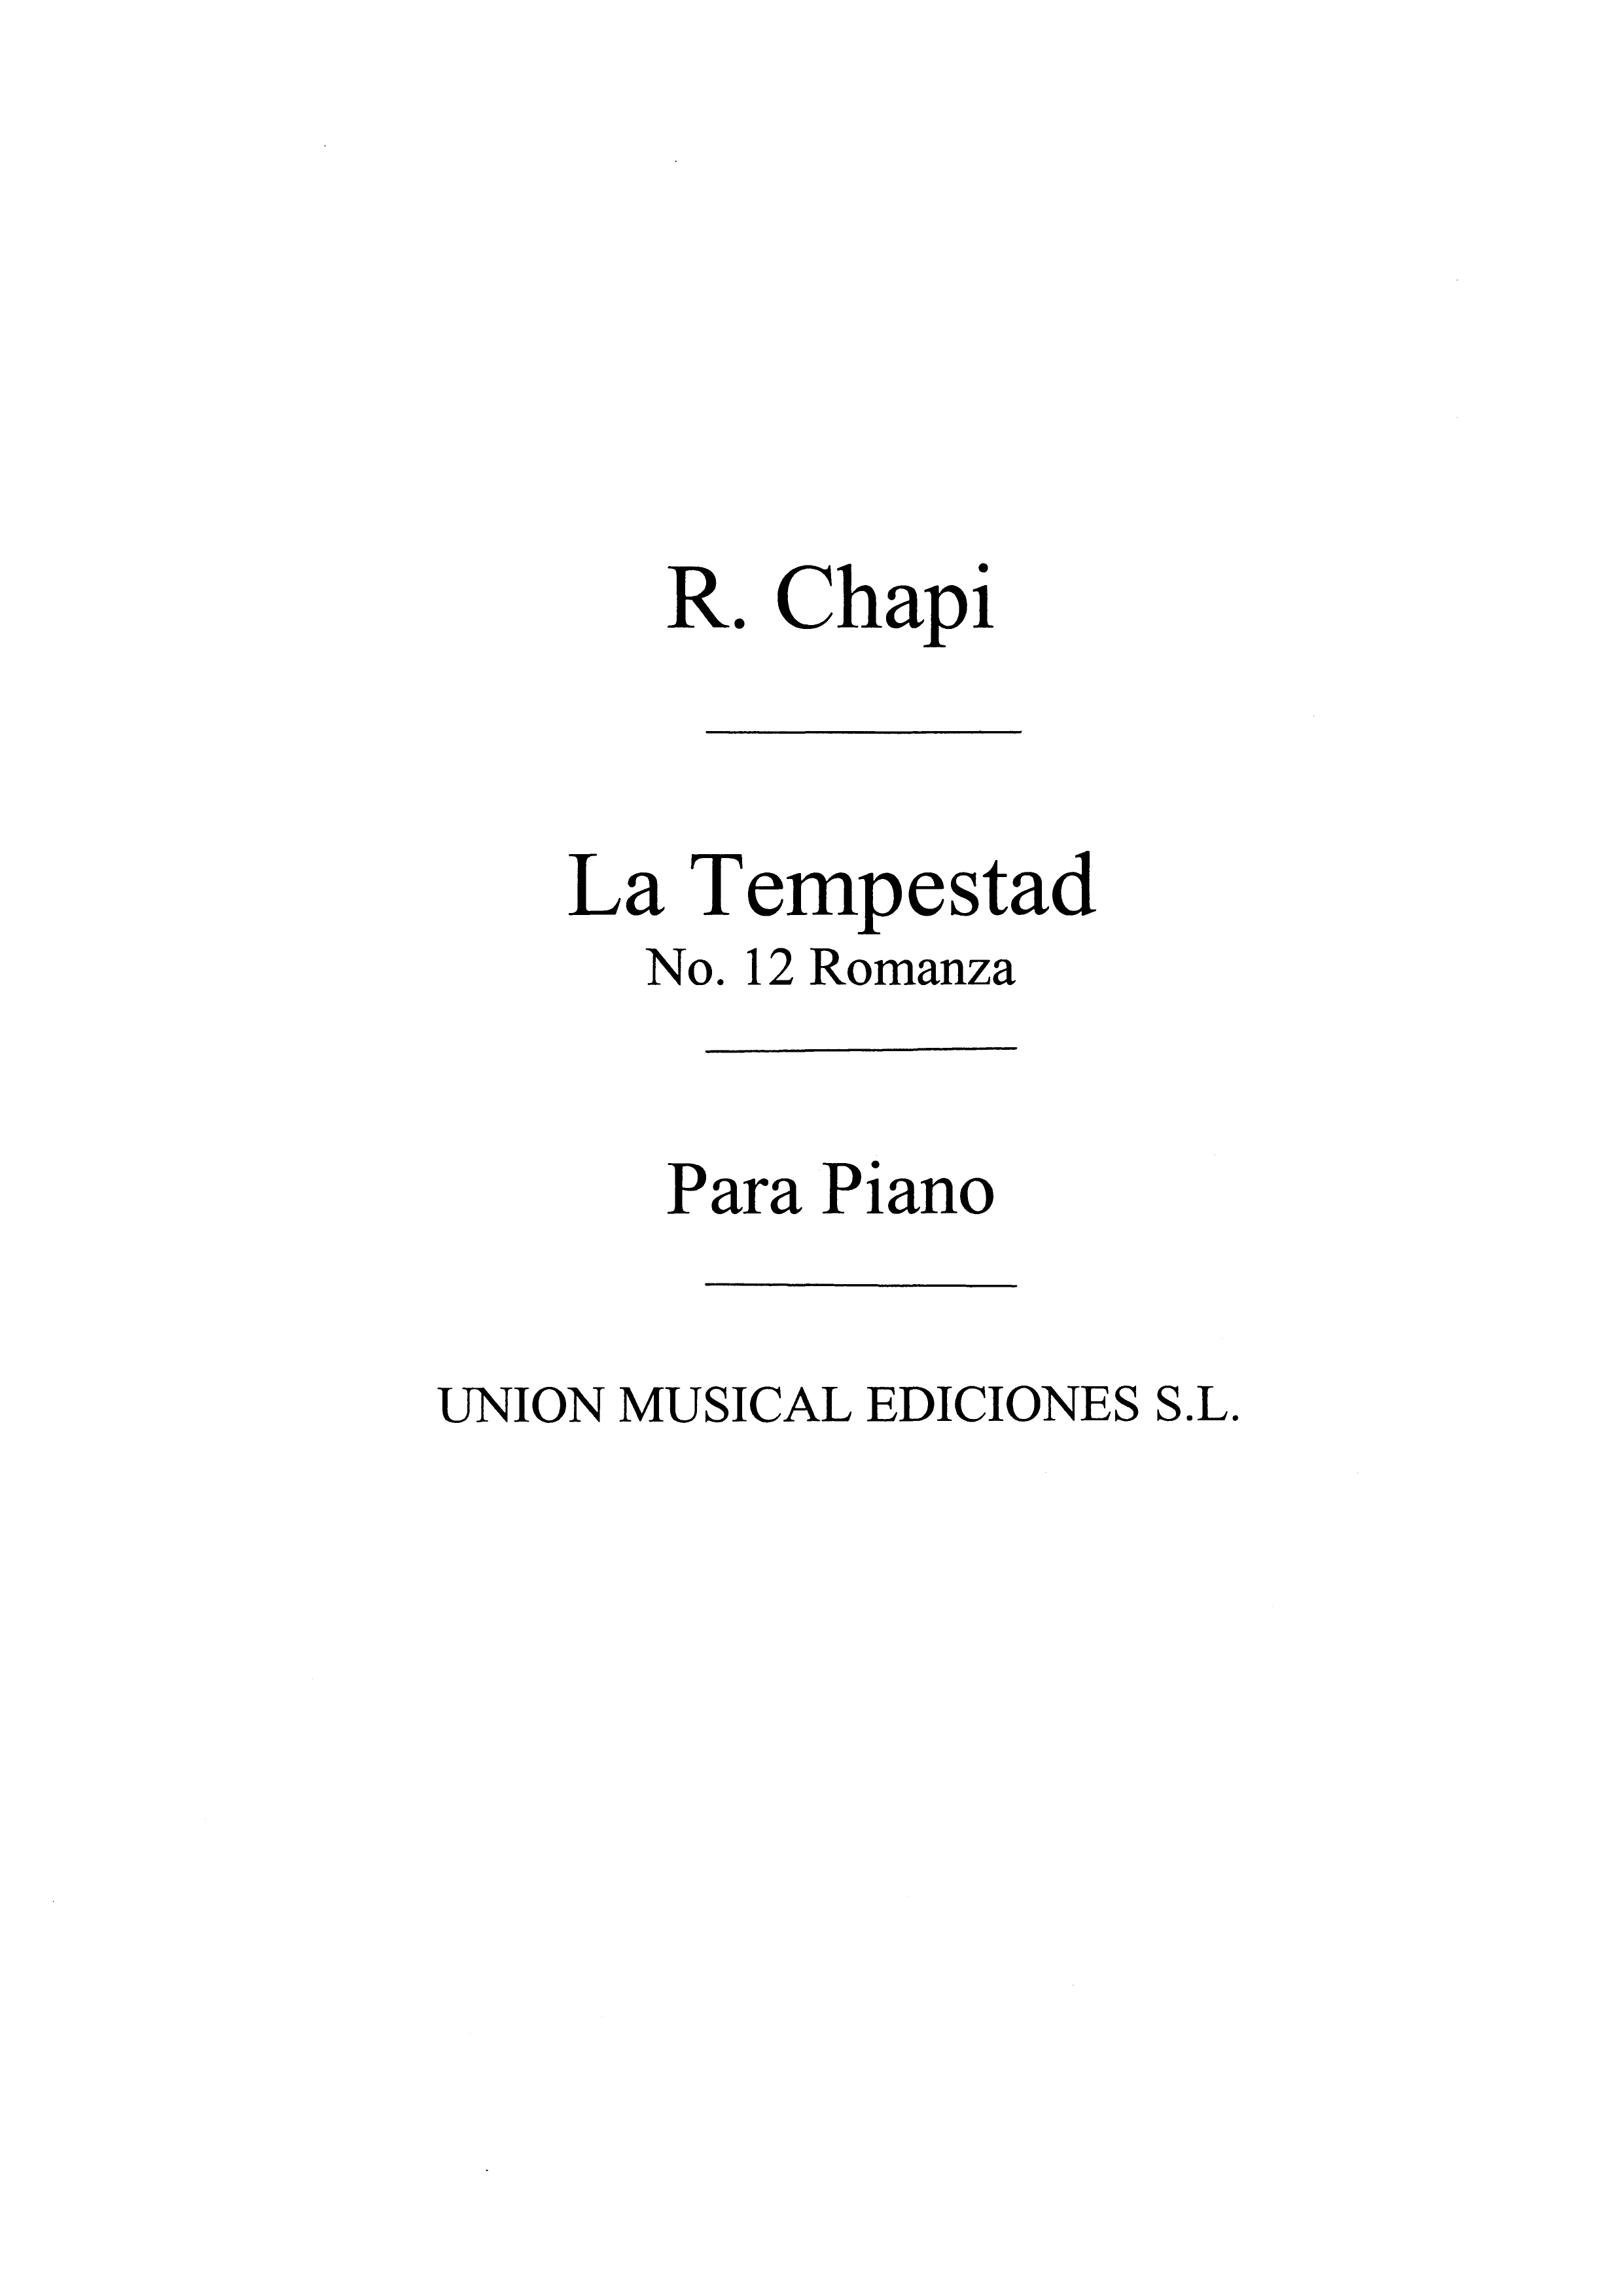 Ruperto Chapi: Romanza No.12 De La Tempestad: Opera: Score